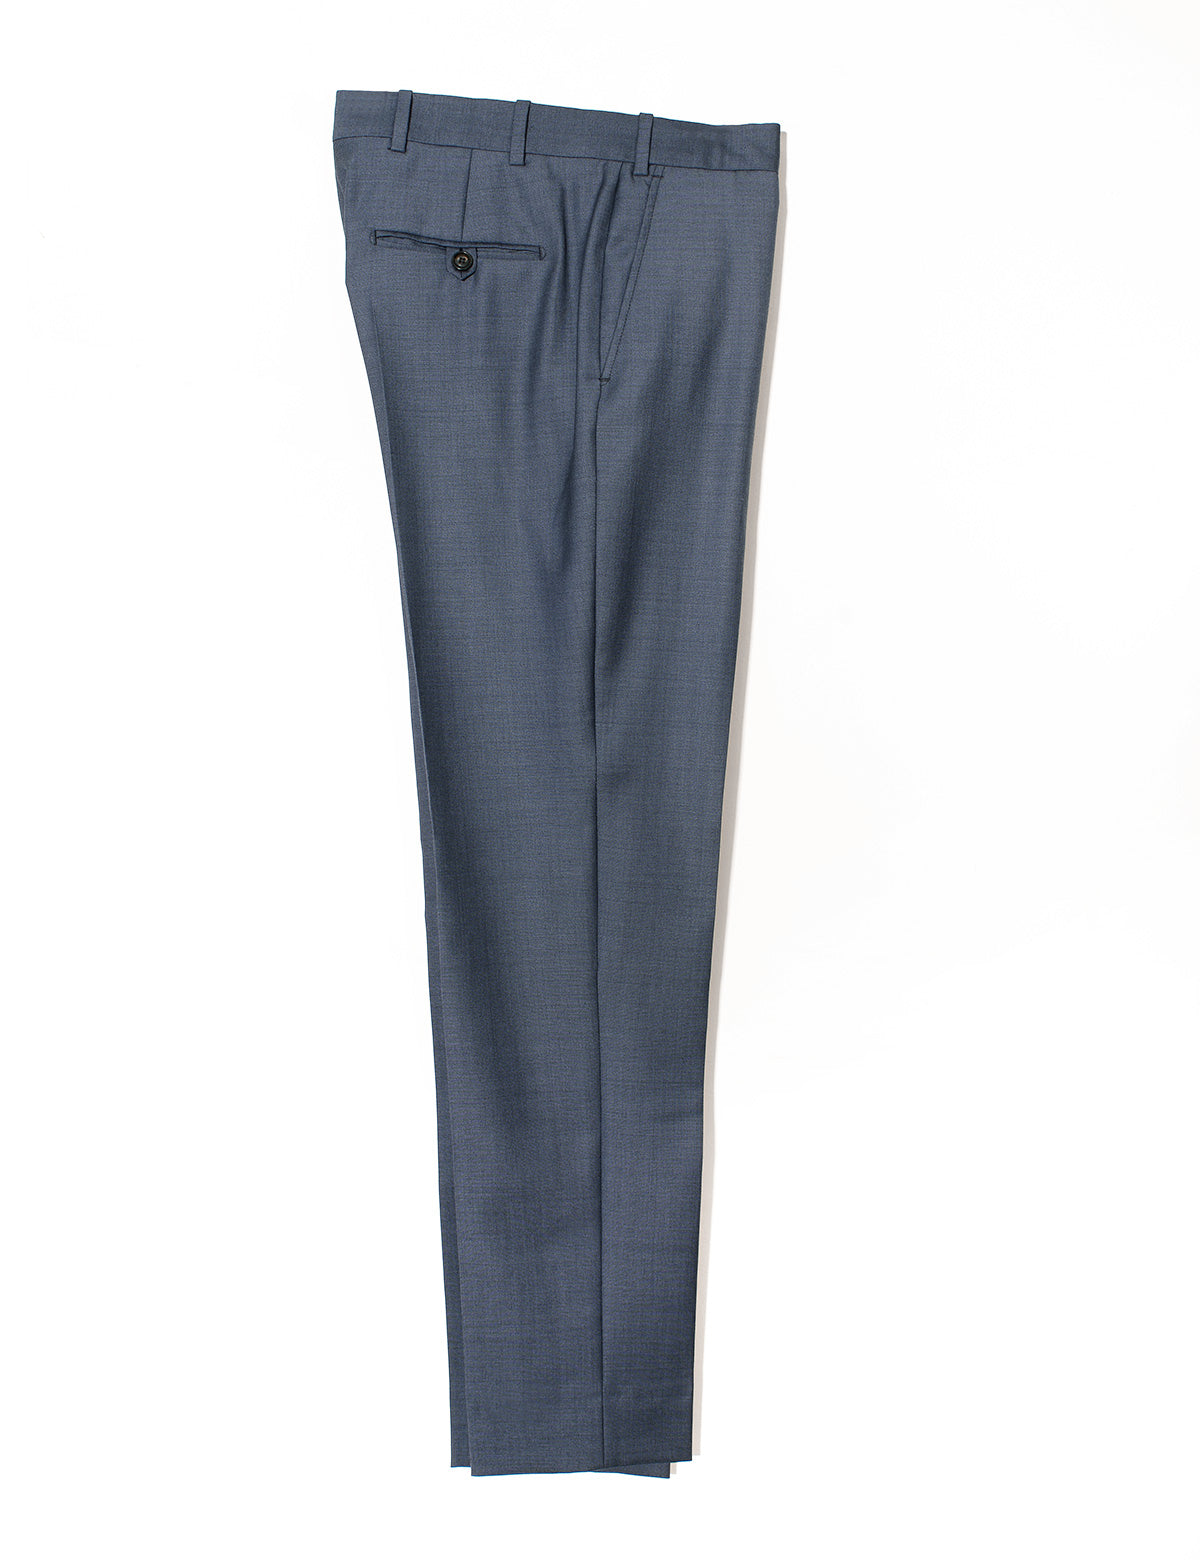 BKT50 Tailored Trousers in Wool Sharkskin - Haze Blue